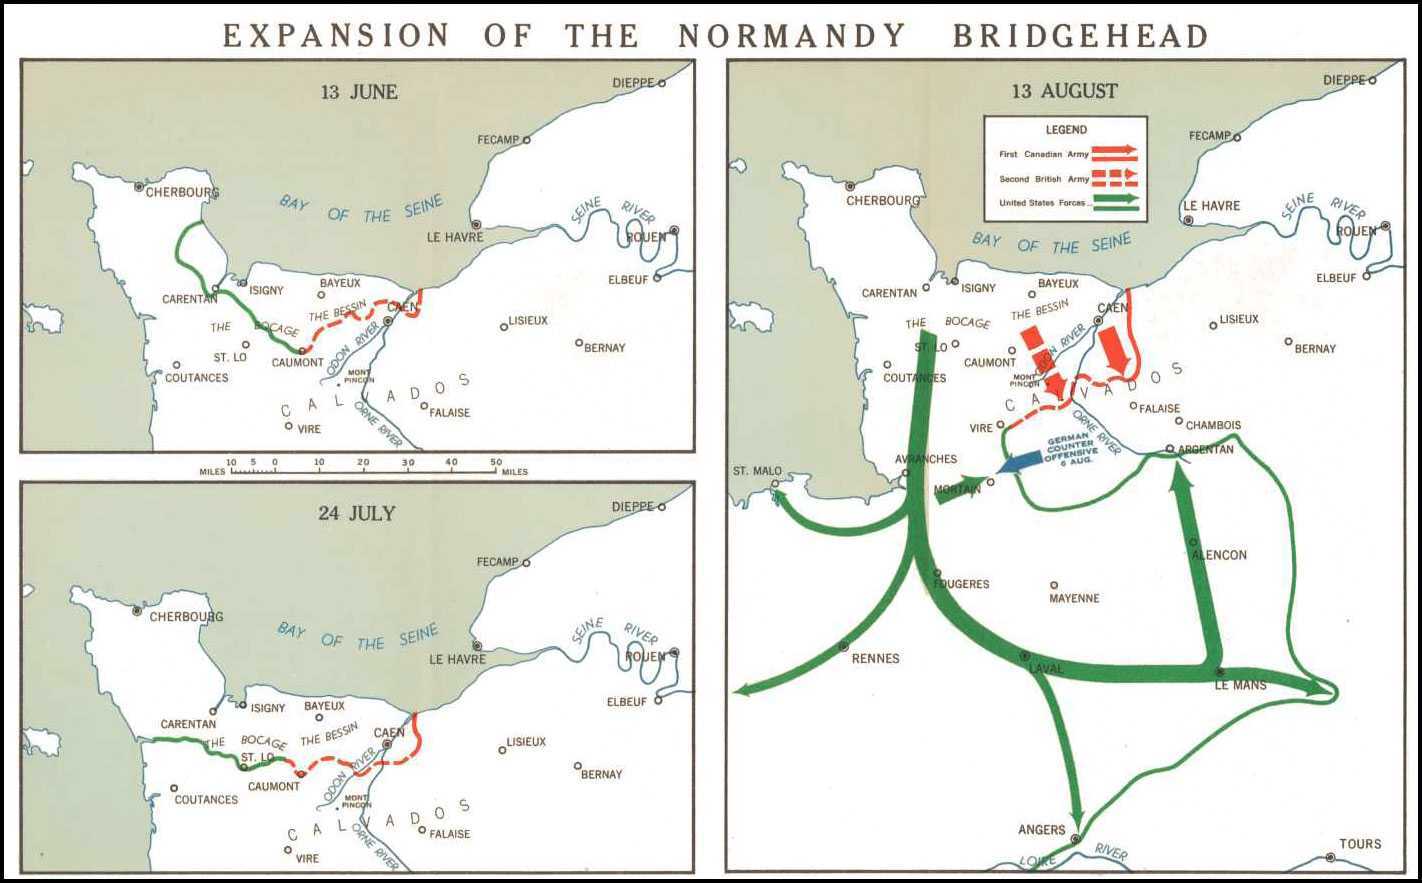 Trois cartes en couleur illustrent les têtes de pont de la Normandie le 13 juin, le 24 juillet et le 13 août 1944.